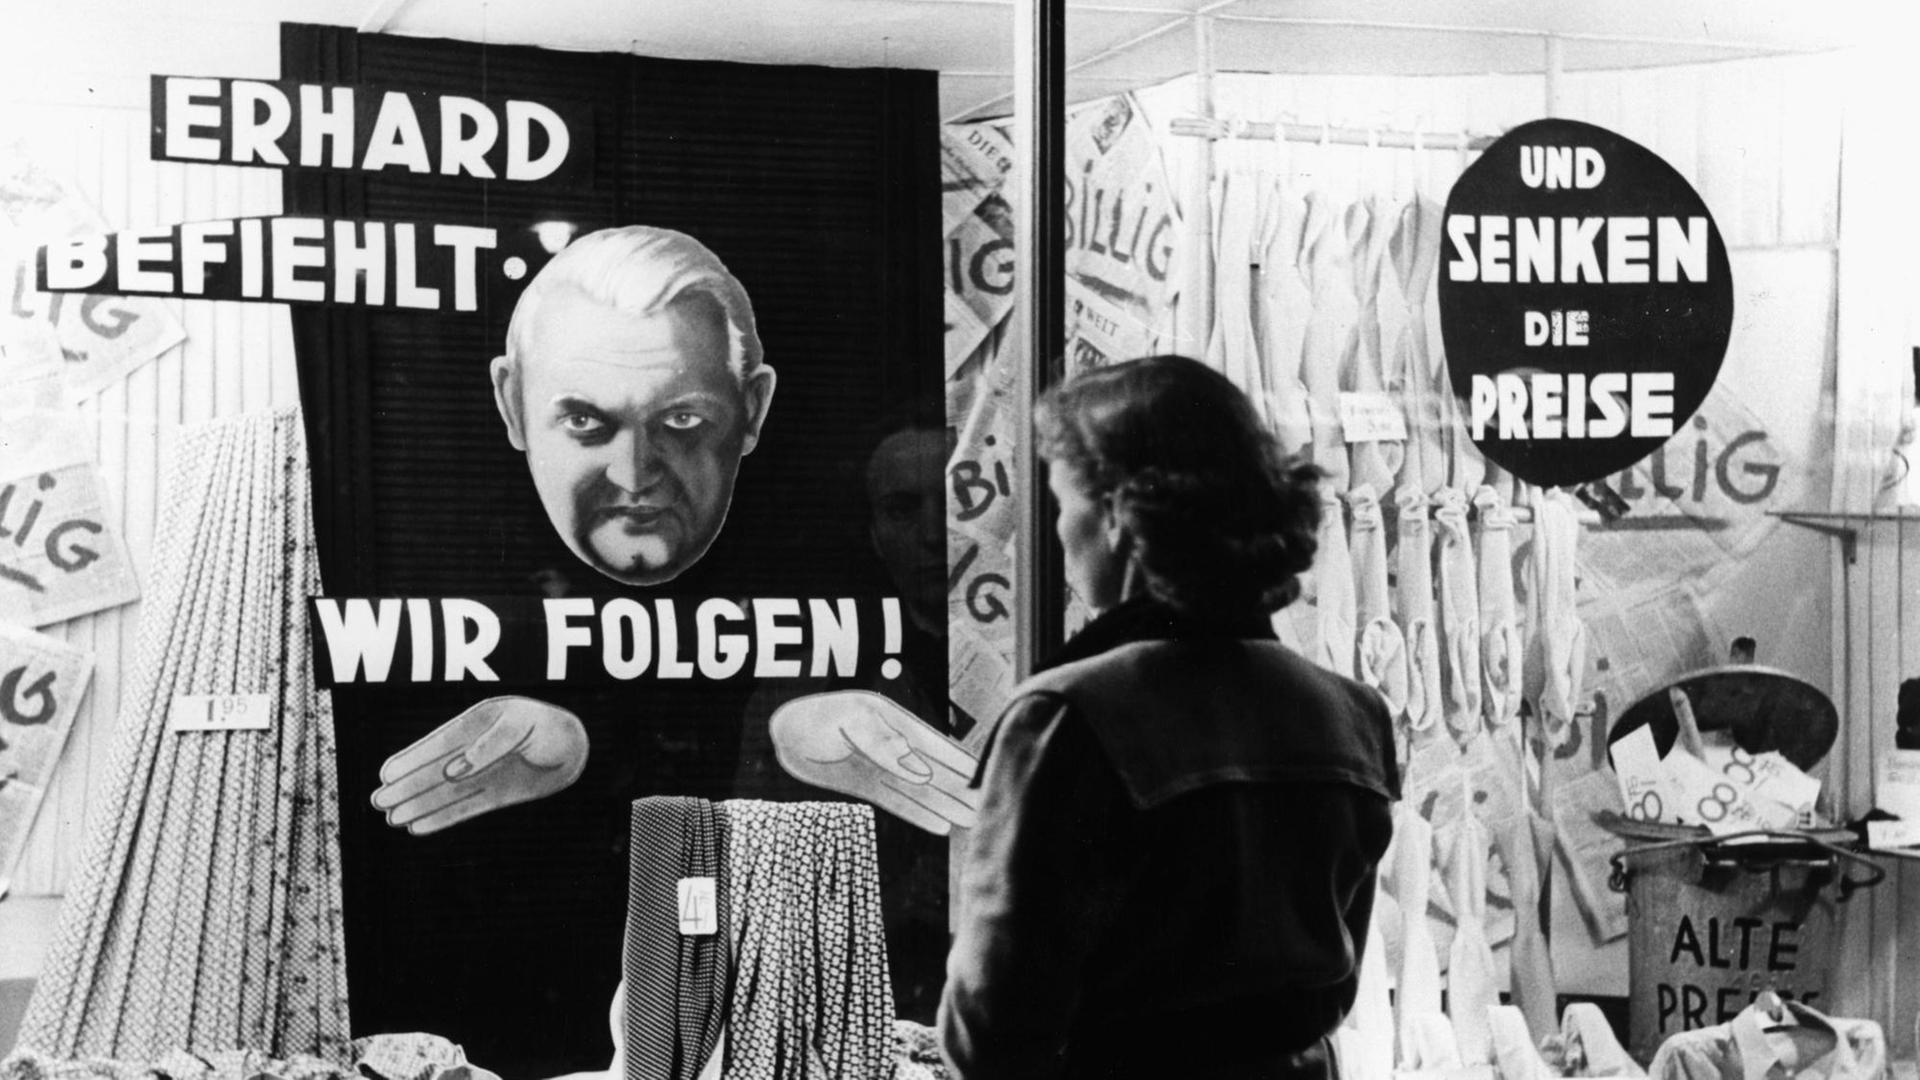 Eine Frau steht vor einem Schaufenster. In dem Schaufenster steht "Erhard befiehlt - wir folgen! und senken die Preise". Das Foto ist von circa 1949/50.